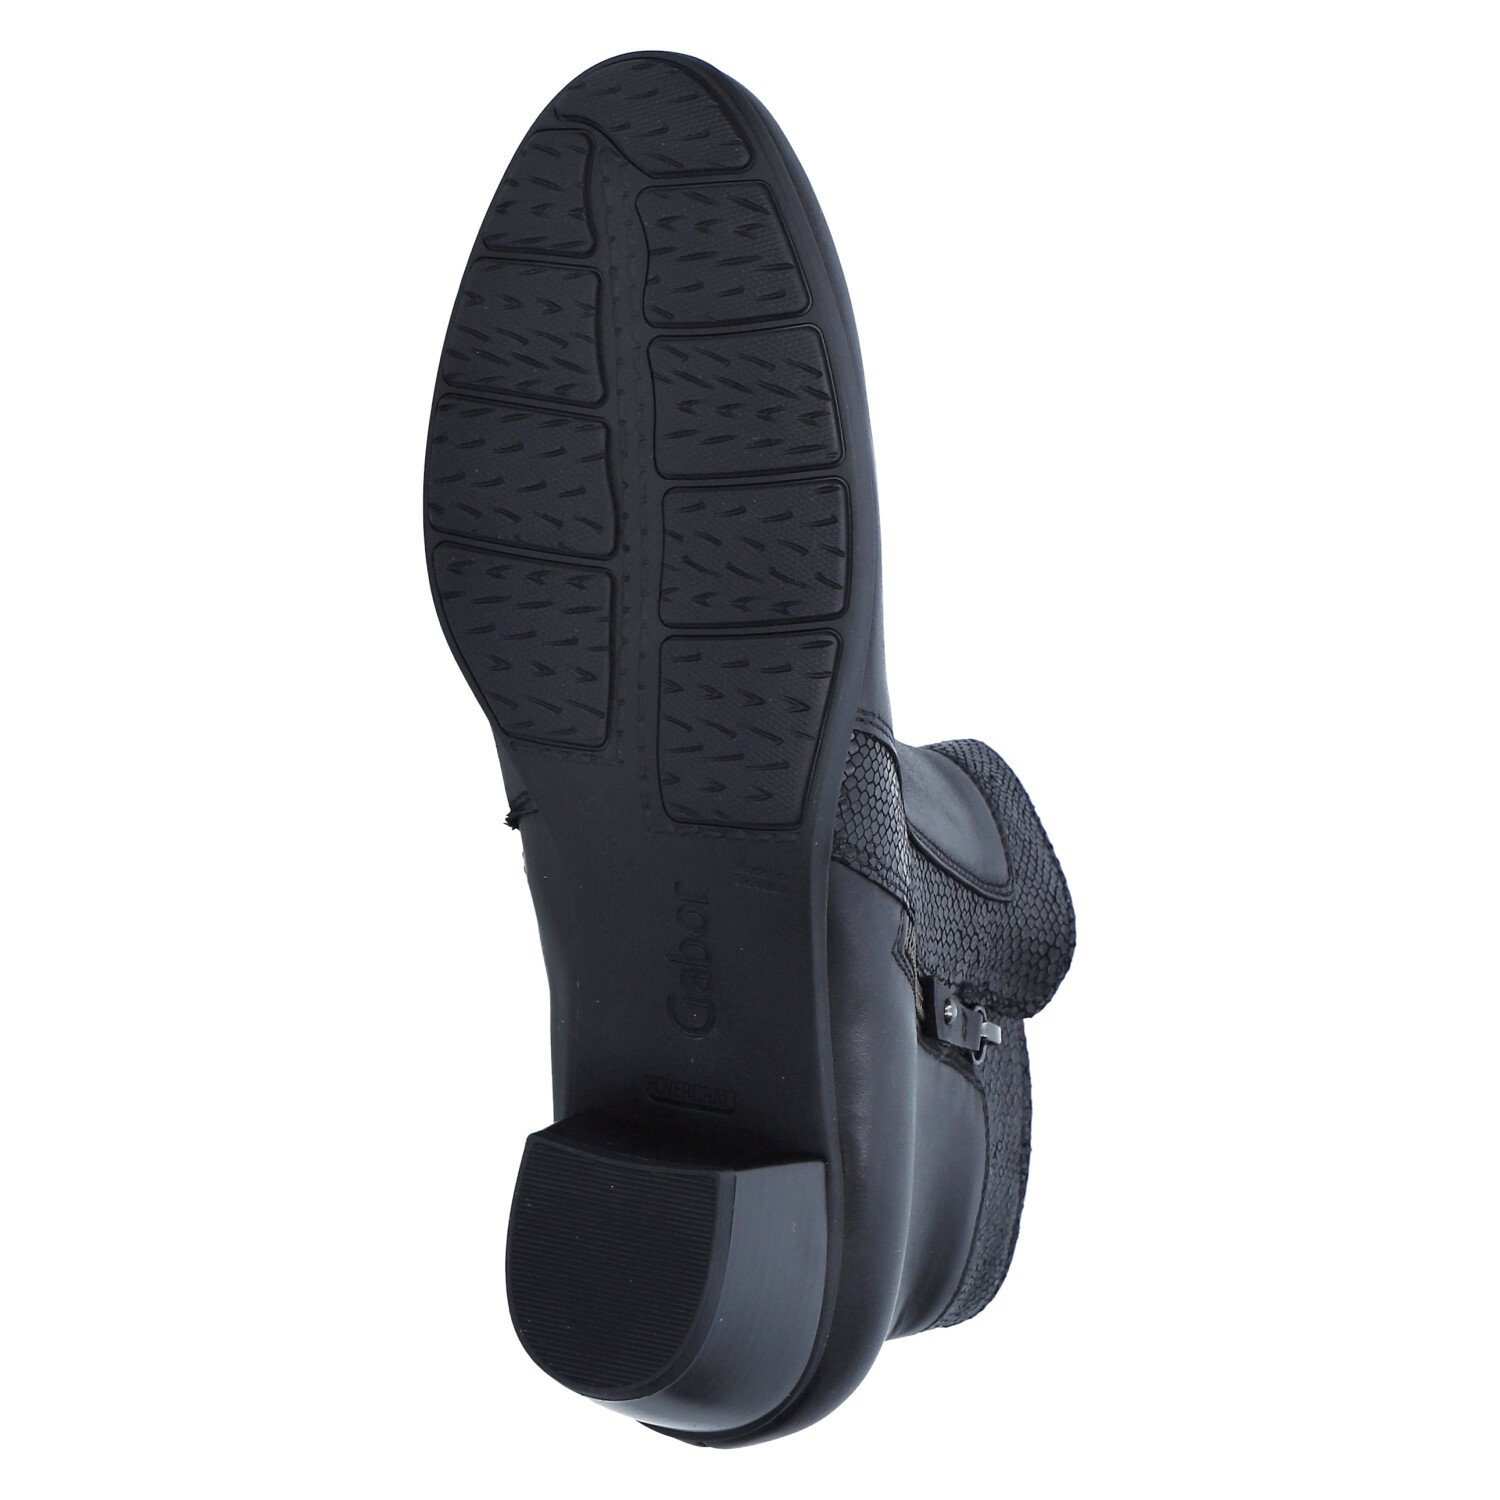 Gabor Ankle Boots 37 / schwarz Stiefelette